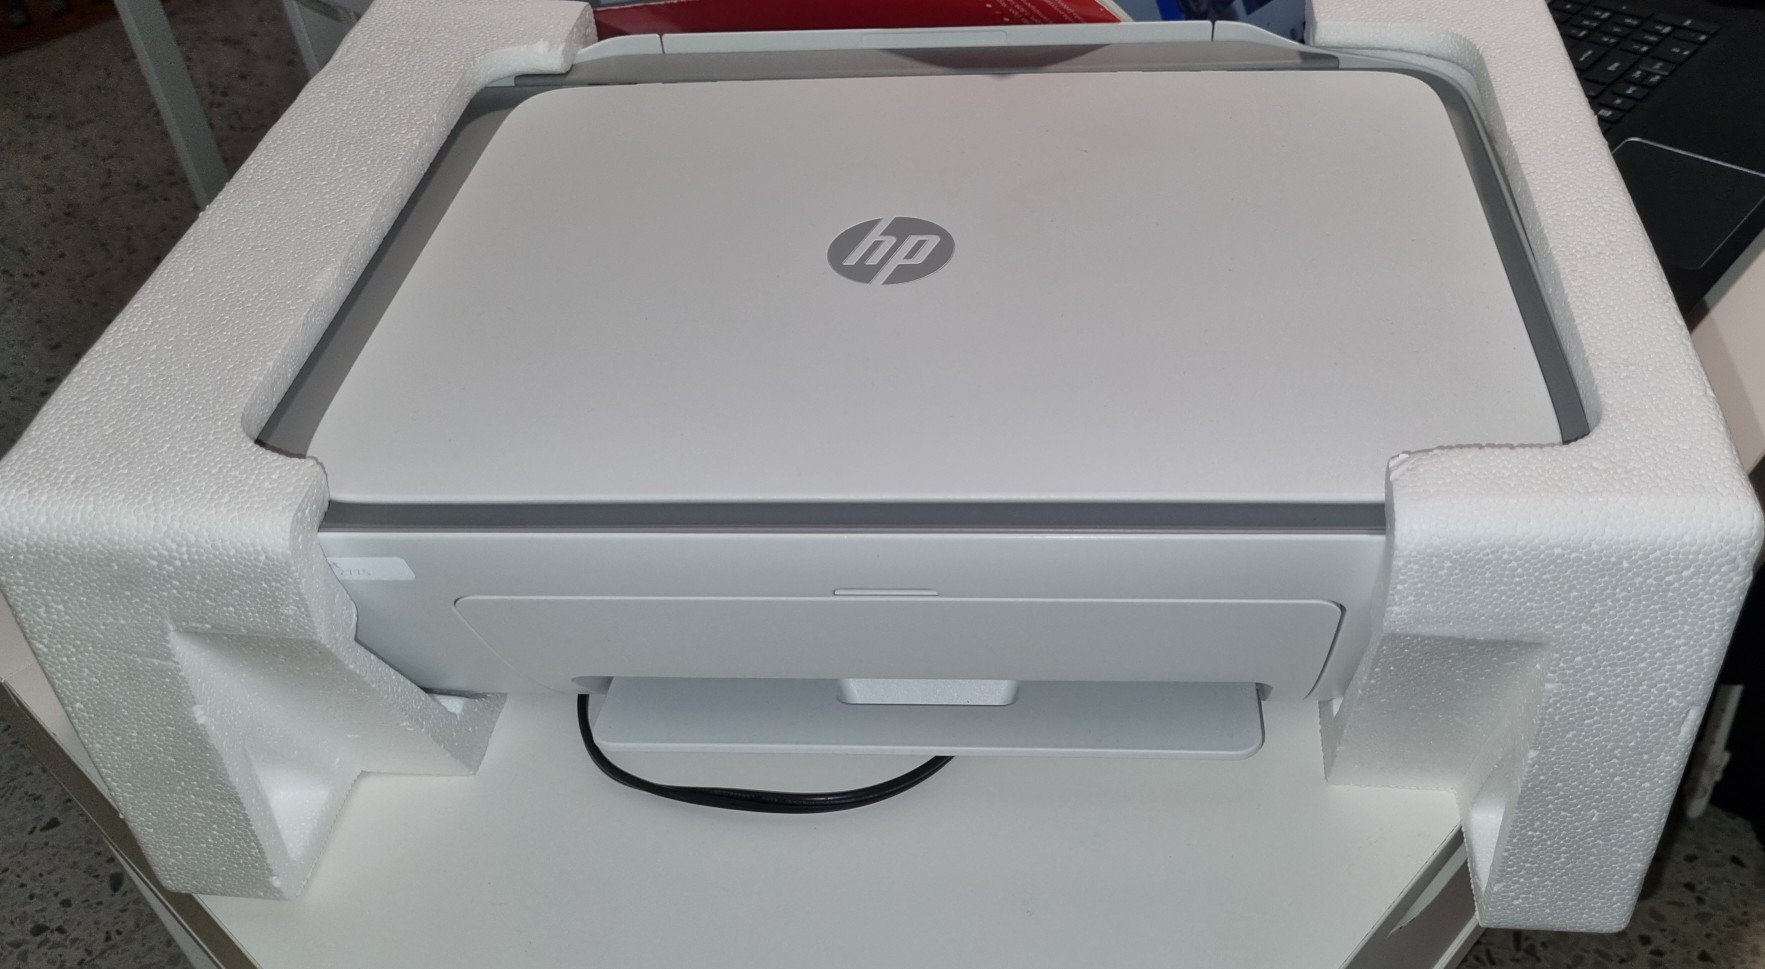 impresoras y scanners - HP DeskJet 2775 practicamente nueva